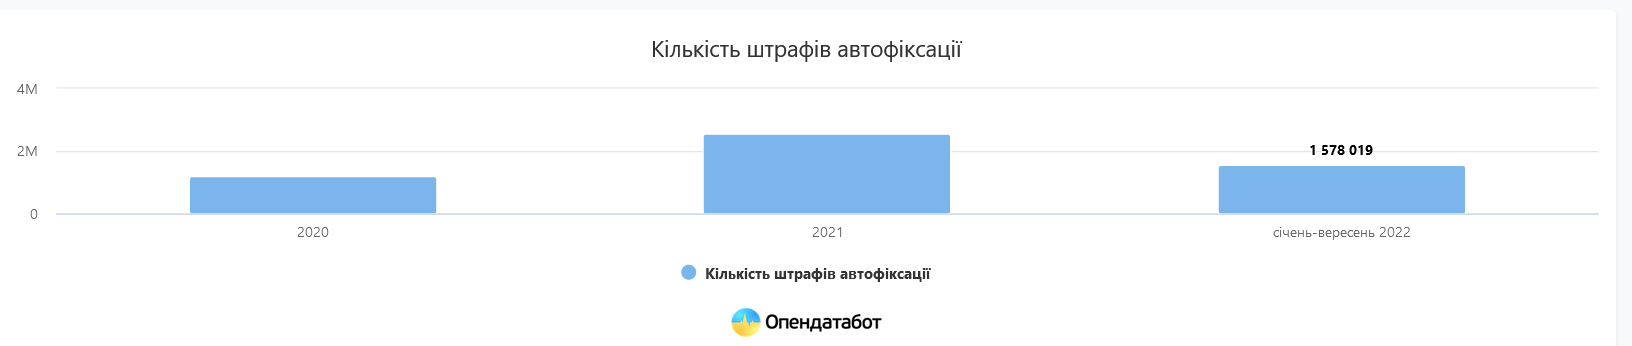 За січень-вересень 2022 року в Україні виписали понад 1,5 млн штрафів за порушення правил дорожнього руху